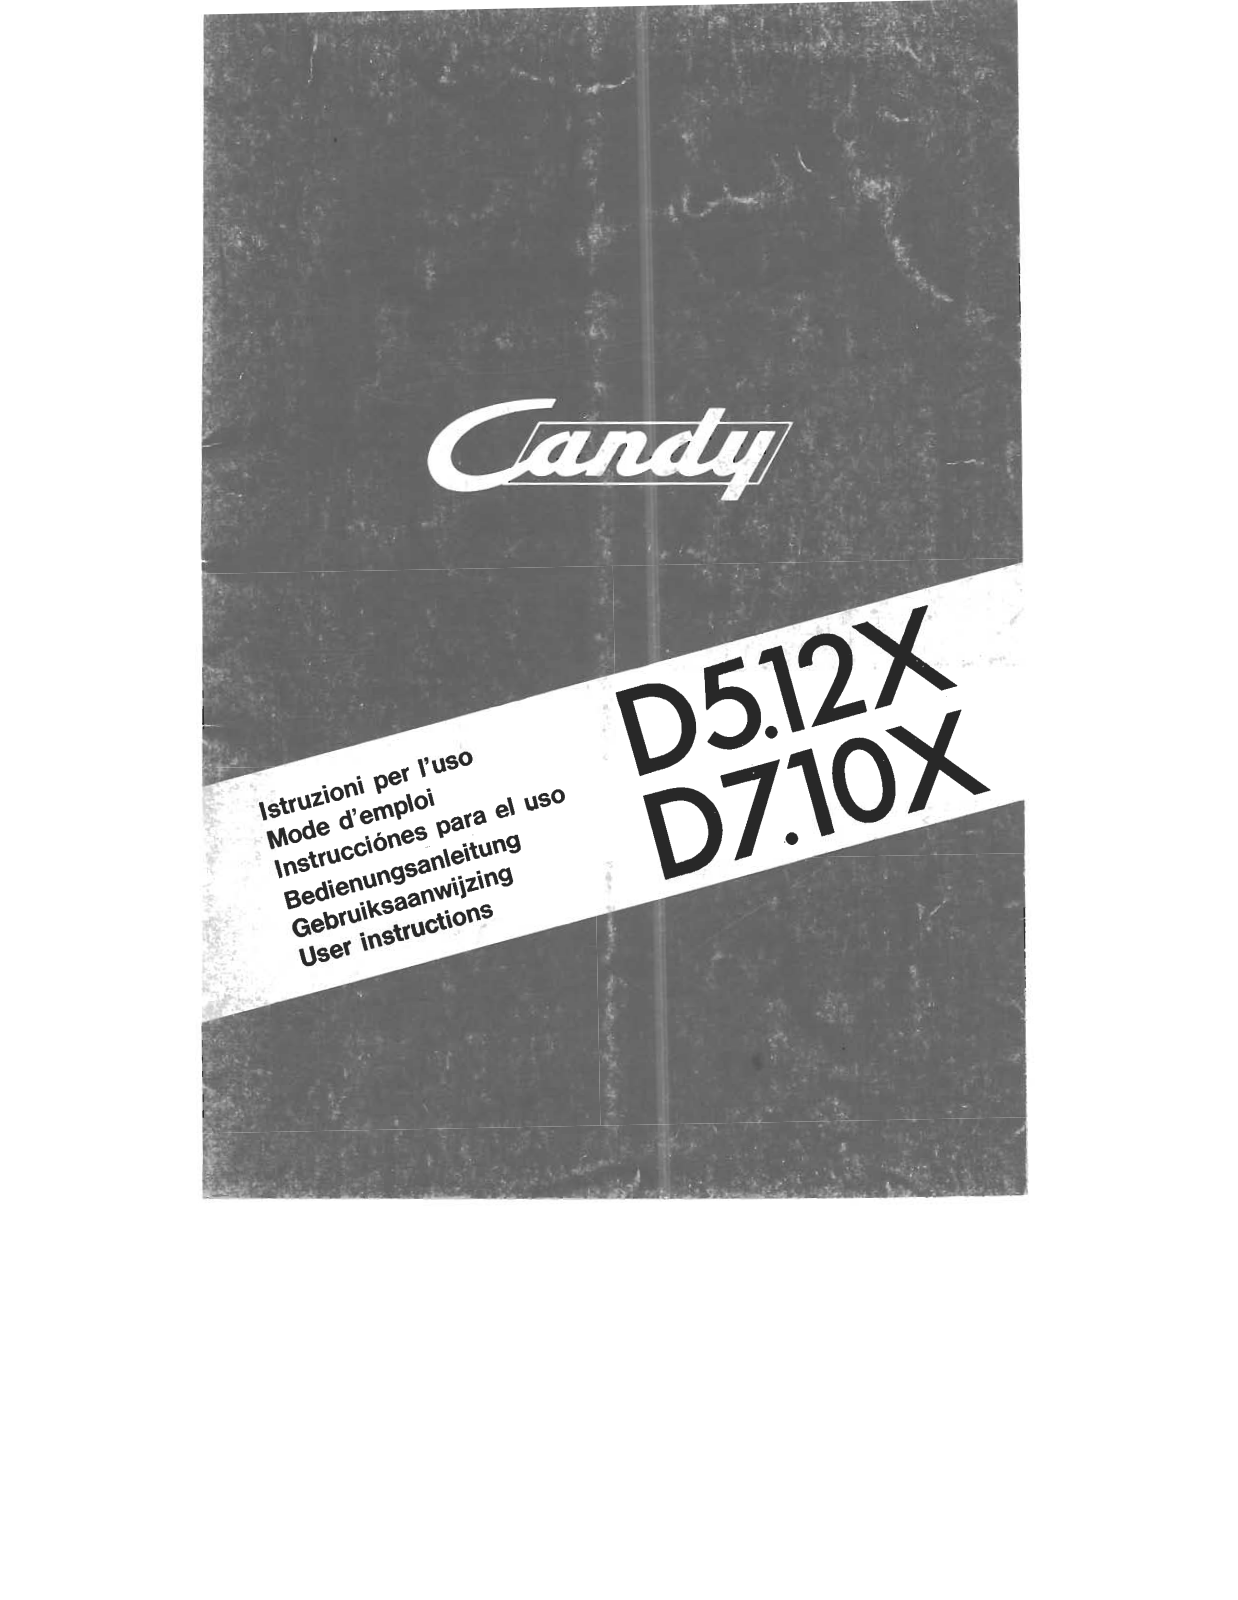 Candy D 710X, D 512X User Manual